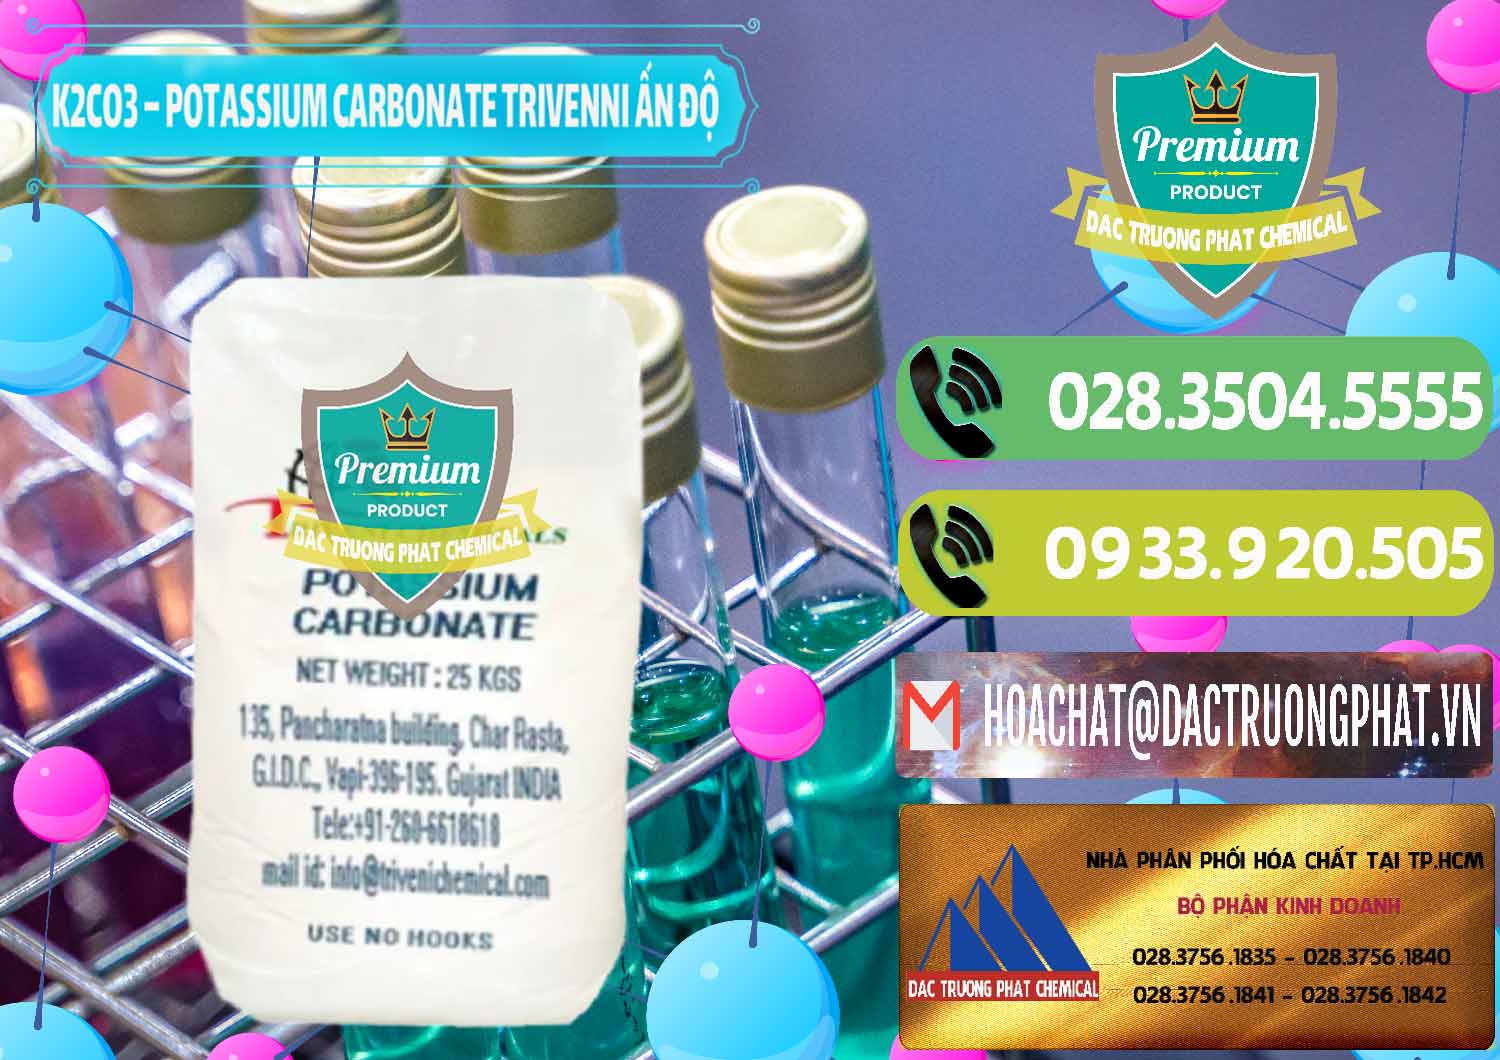 Nơi chuyên kinh doanh ( bán ) K2Co3 – Potassium Carbonate Trivenni Ấn Độ India - 0473 - Chuyên bán - phân phối hóa chất tại TP.HCM - hoachatmientay.vn